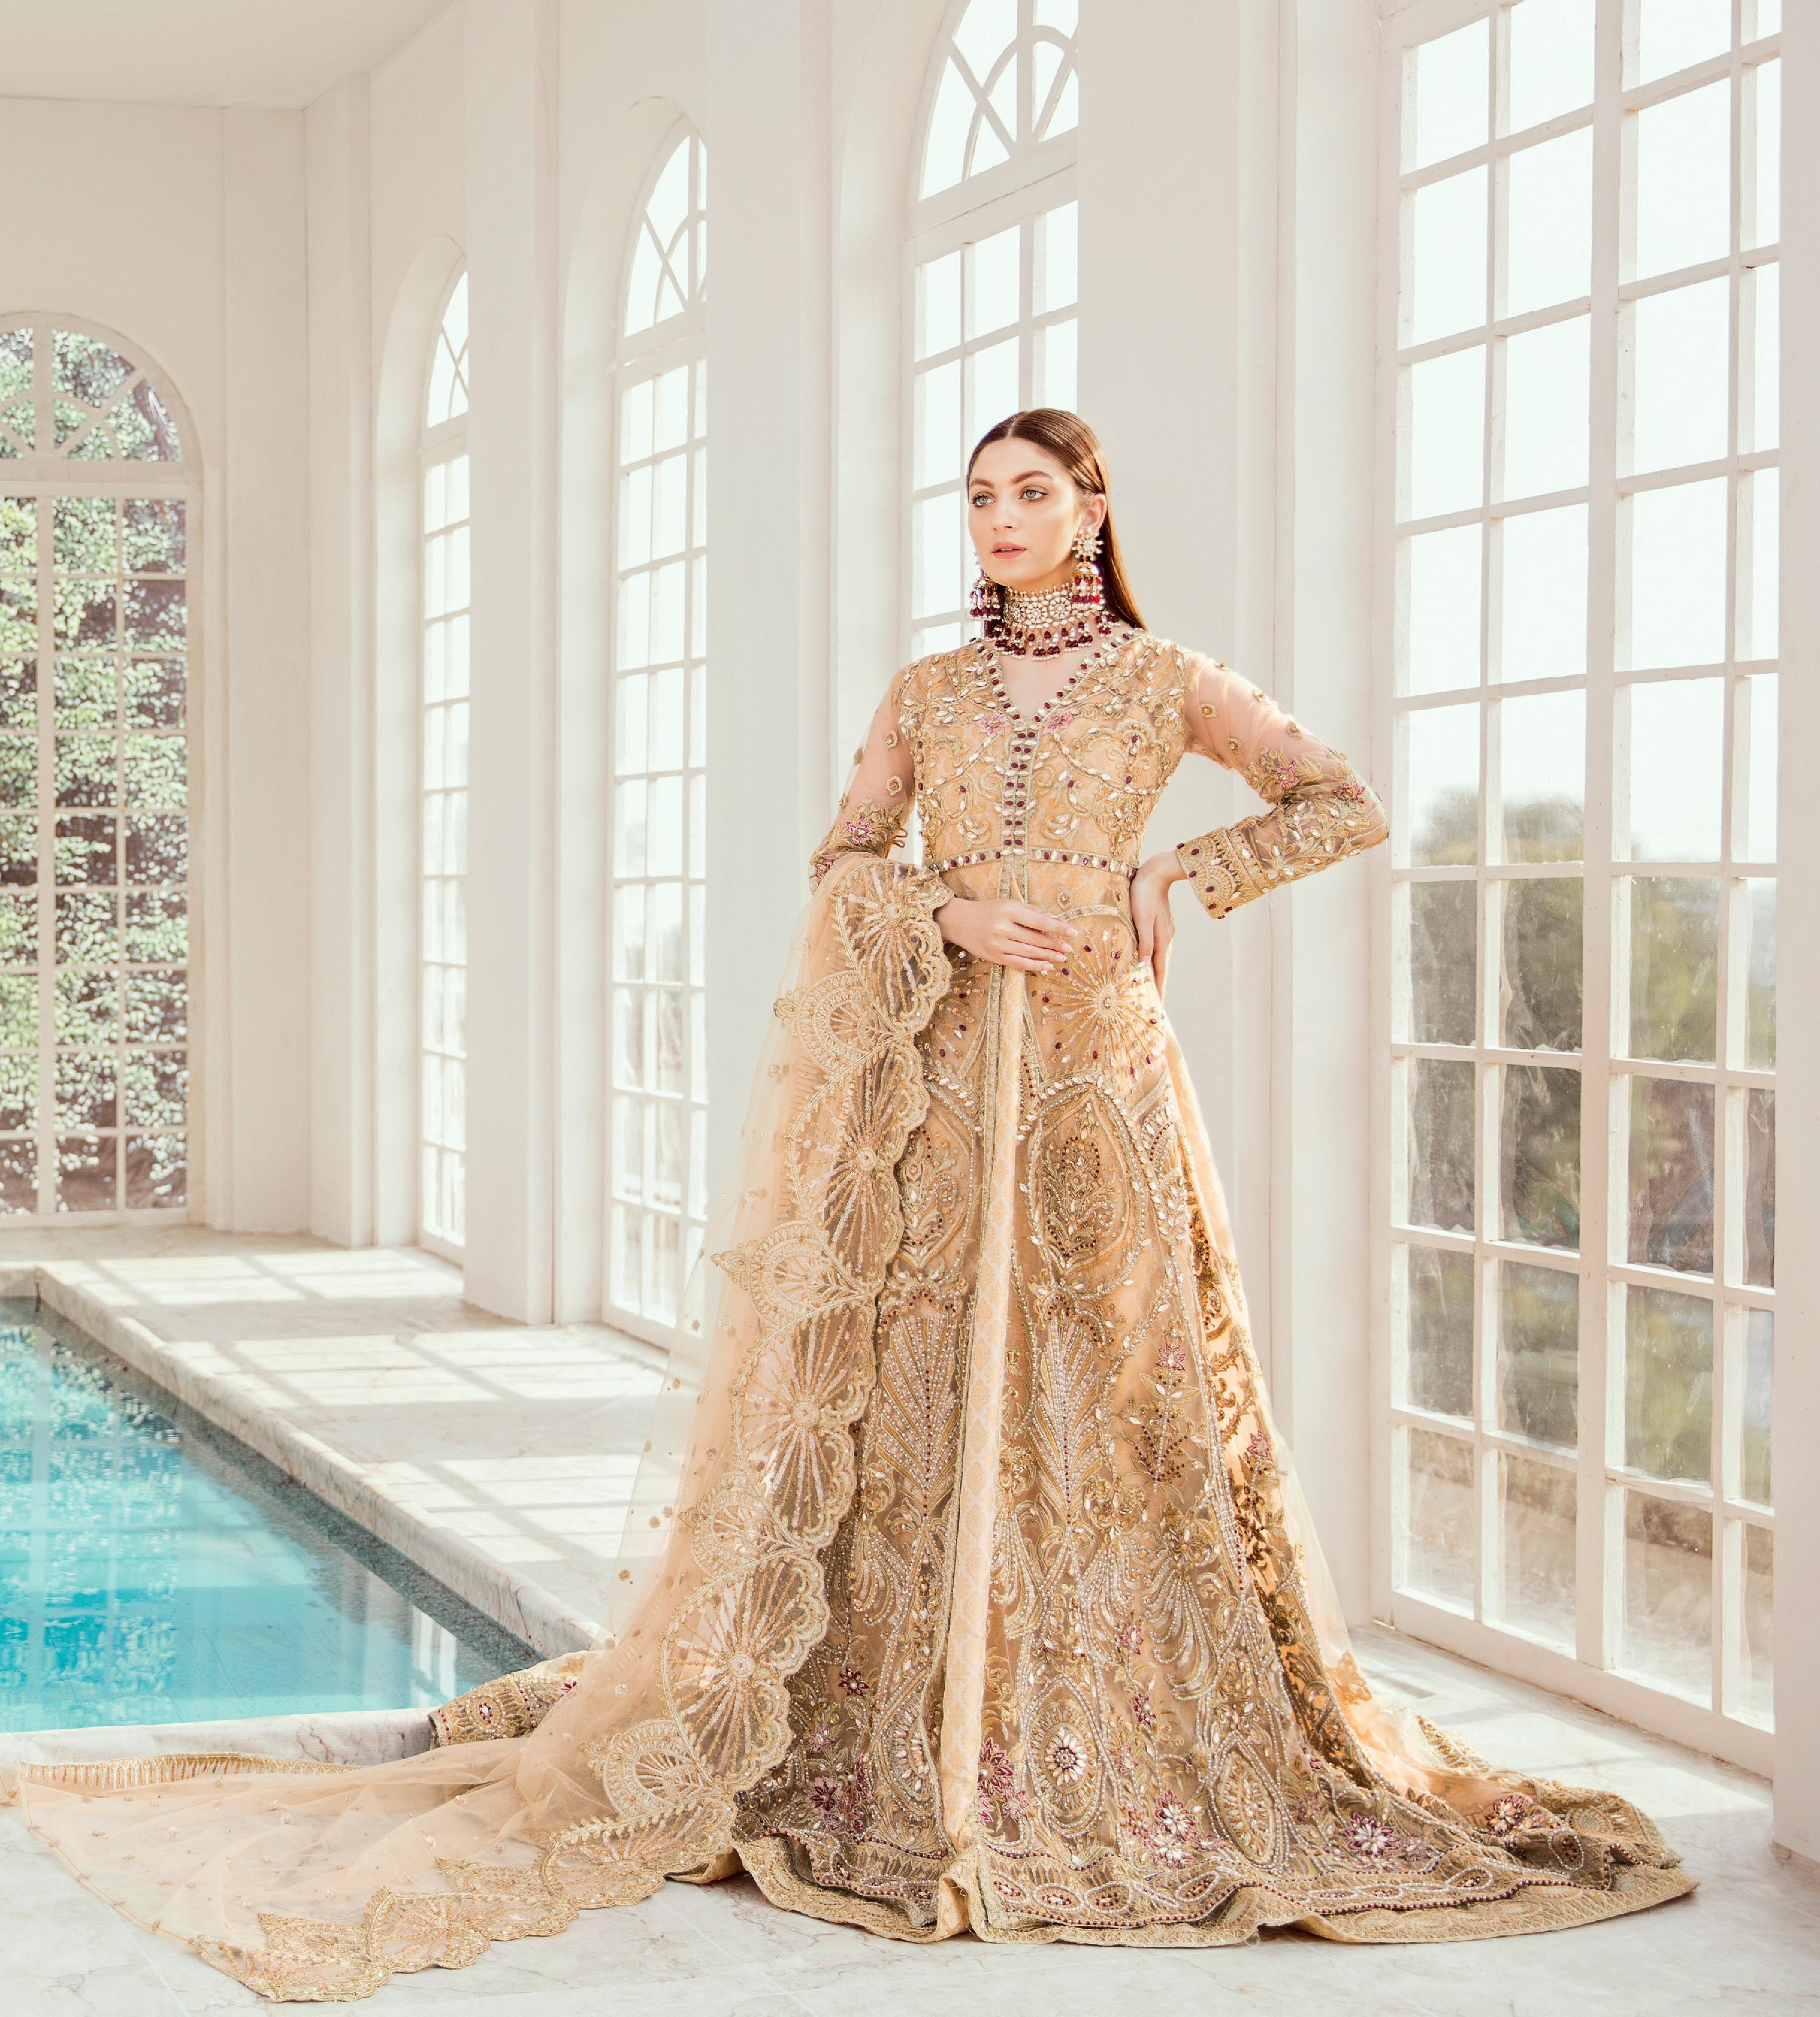 Asian Wedding Dress / Bridal Lengha Pakistani Indian Uk heavy white gold |  eBay